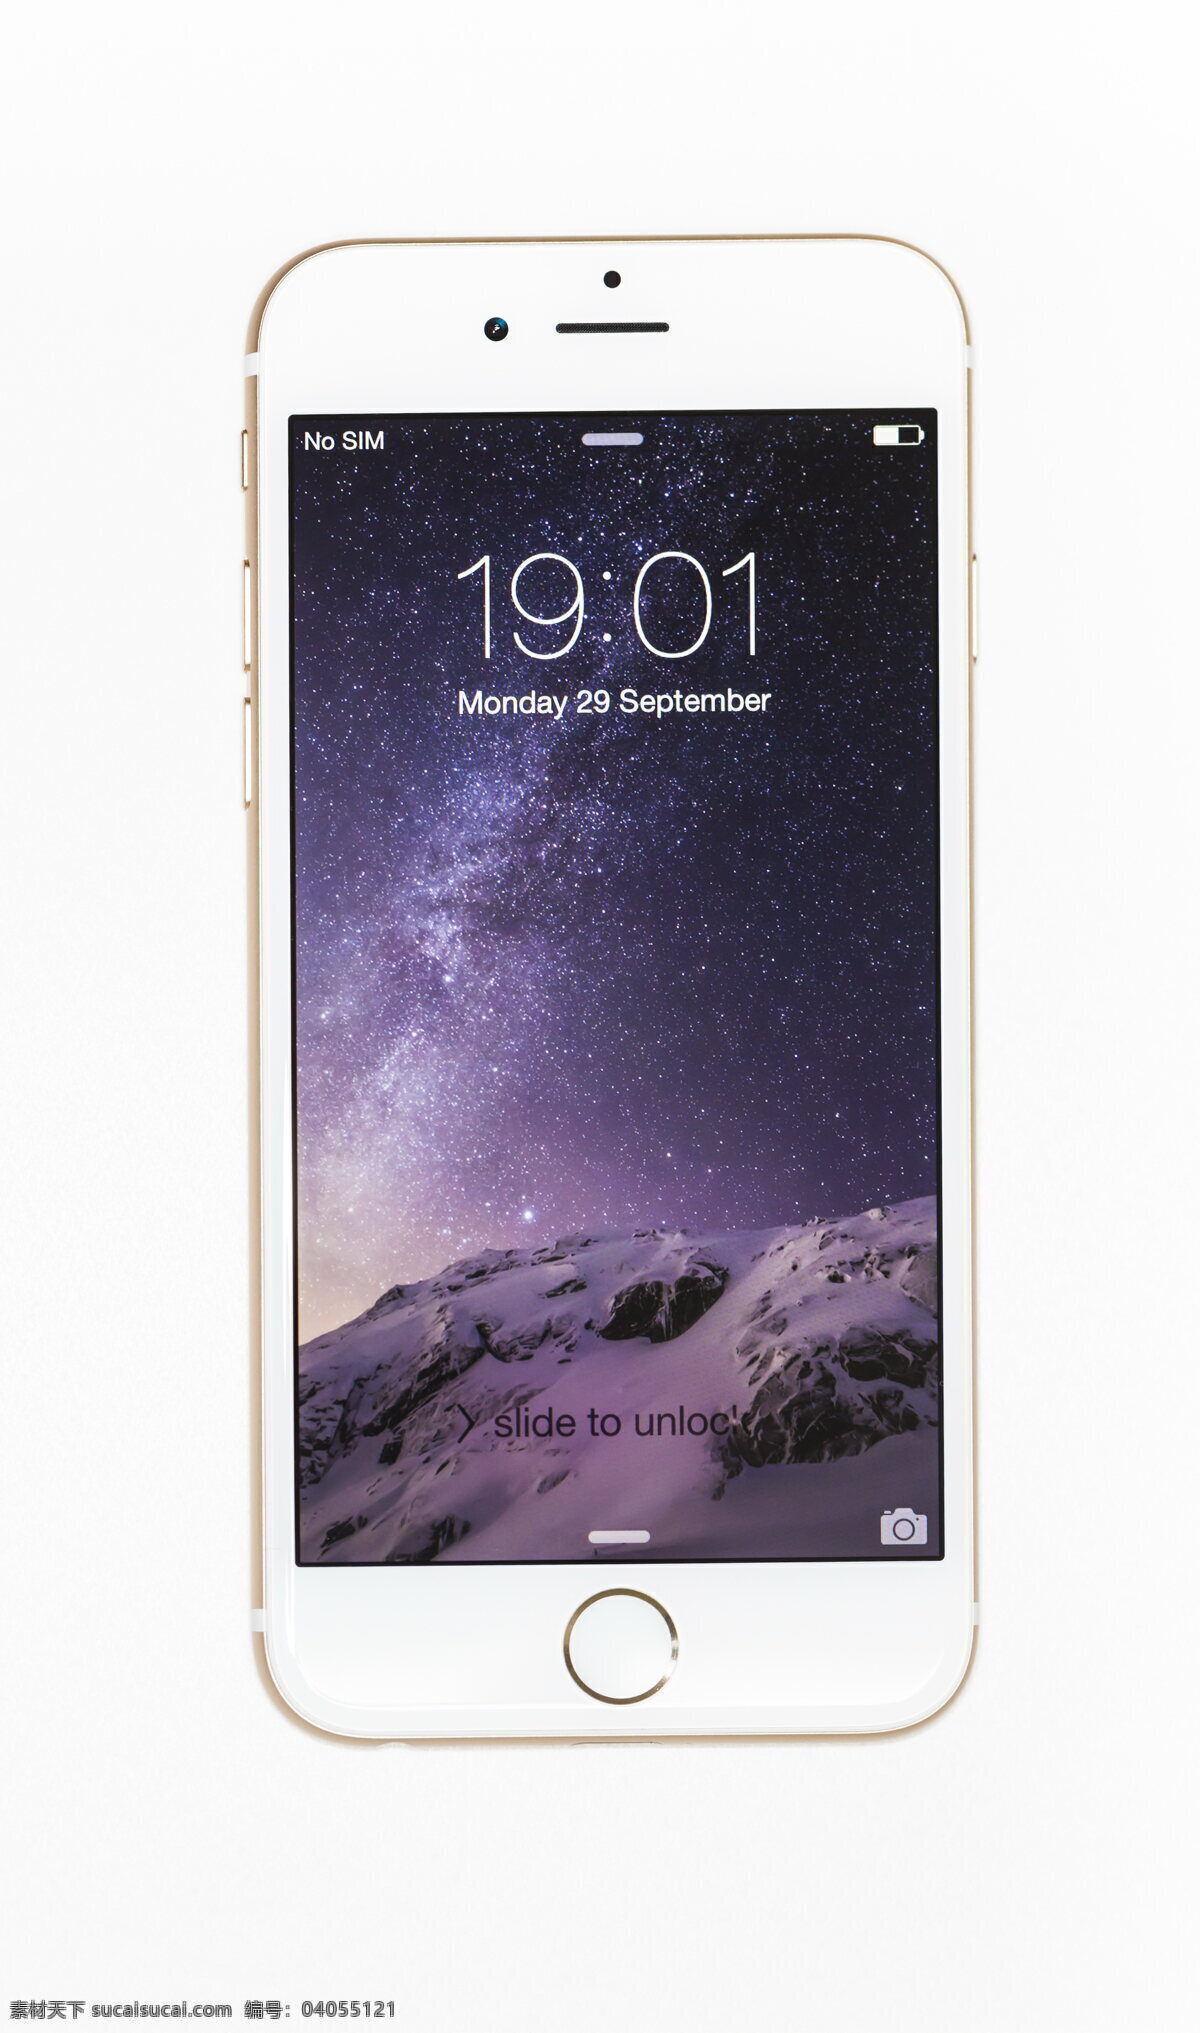 苹果6 苹果手机 iphone6 手机 智能手机 屏幕 界面 时间 屏保 iphone 电子 产品 通讯设备 apple 品牌 苹果系列 生活百科 数码家电